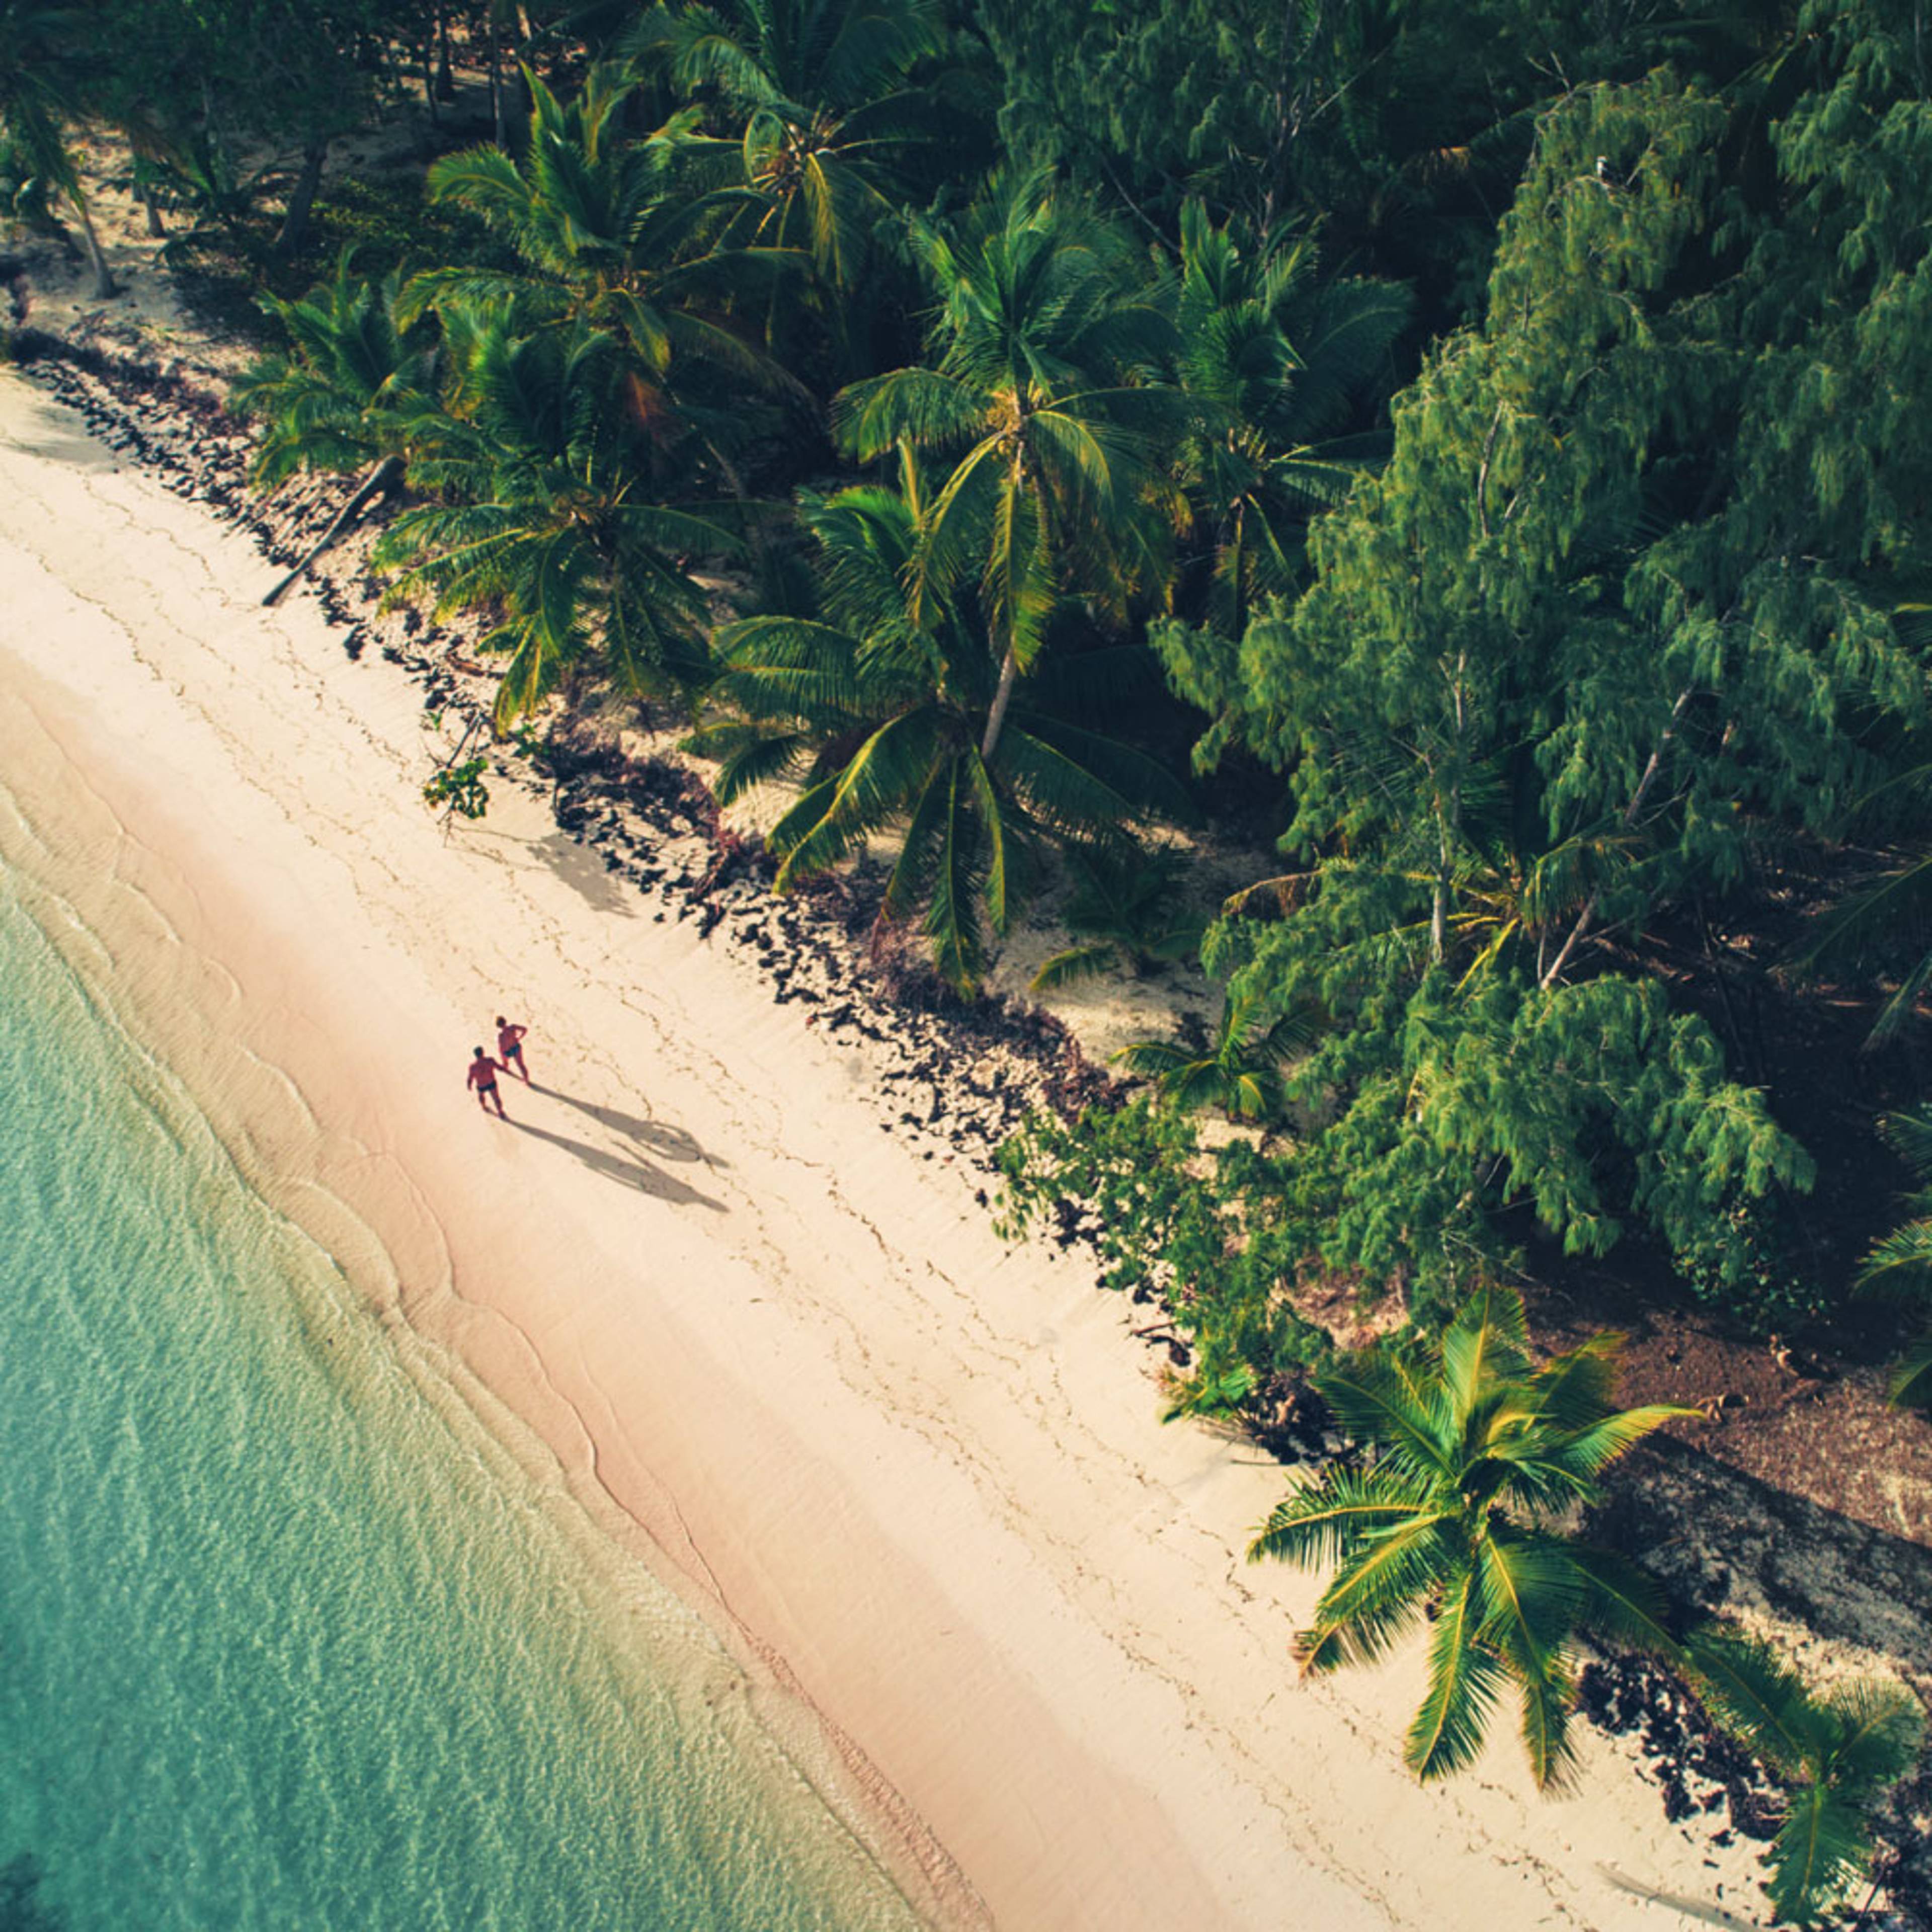 Découvrez les plus belles plages lors de votre voyage en République Dominicaine 100% sur mesure